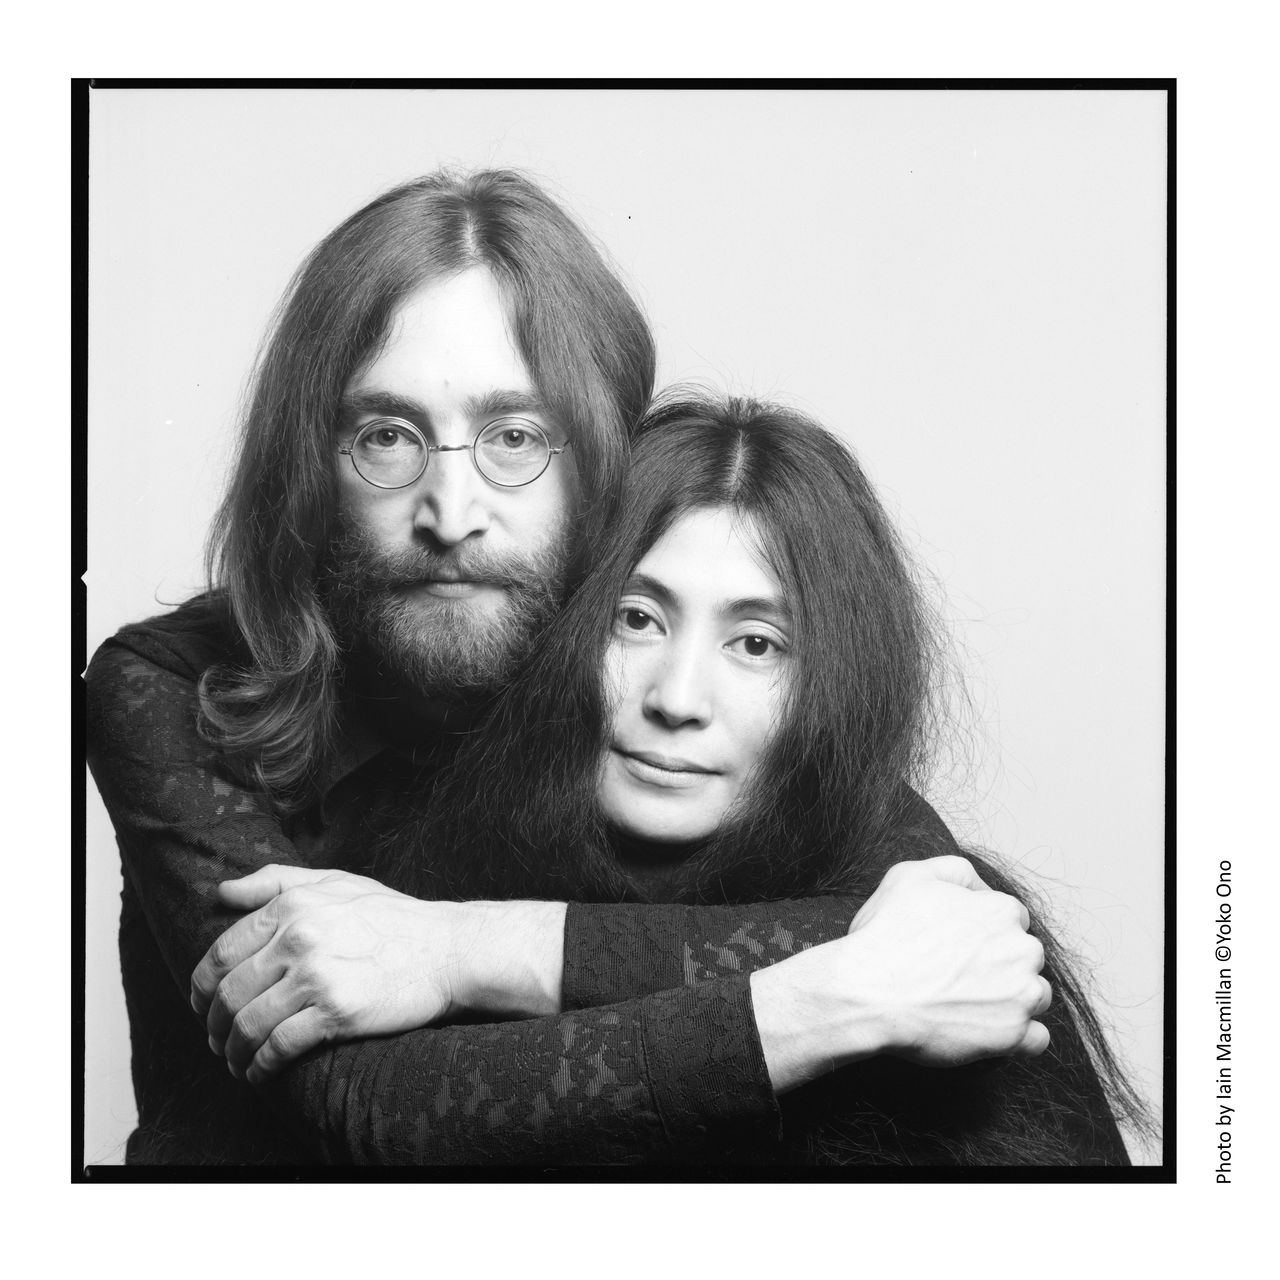 Una de las fotografías incluidas en la muestra DOUBLE FANTASY - John & Yoko, abierta en el Sony Music Roppongi Museum de Tokio entre el 9 de octubre de 2020 y el 11 de enero de 2021. En Liverpool (Reino Unido), la exposición recibió más de 700.000 visitantes. La muestra de Tokio tiene una sección especial que explora el nexo japonés de Lennon bajo el título “Japan Exclusive”.